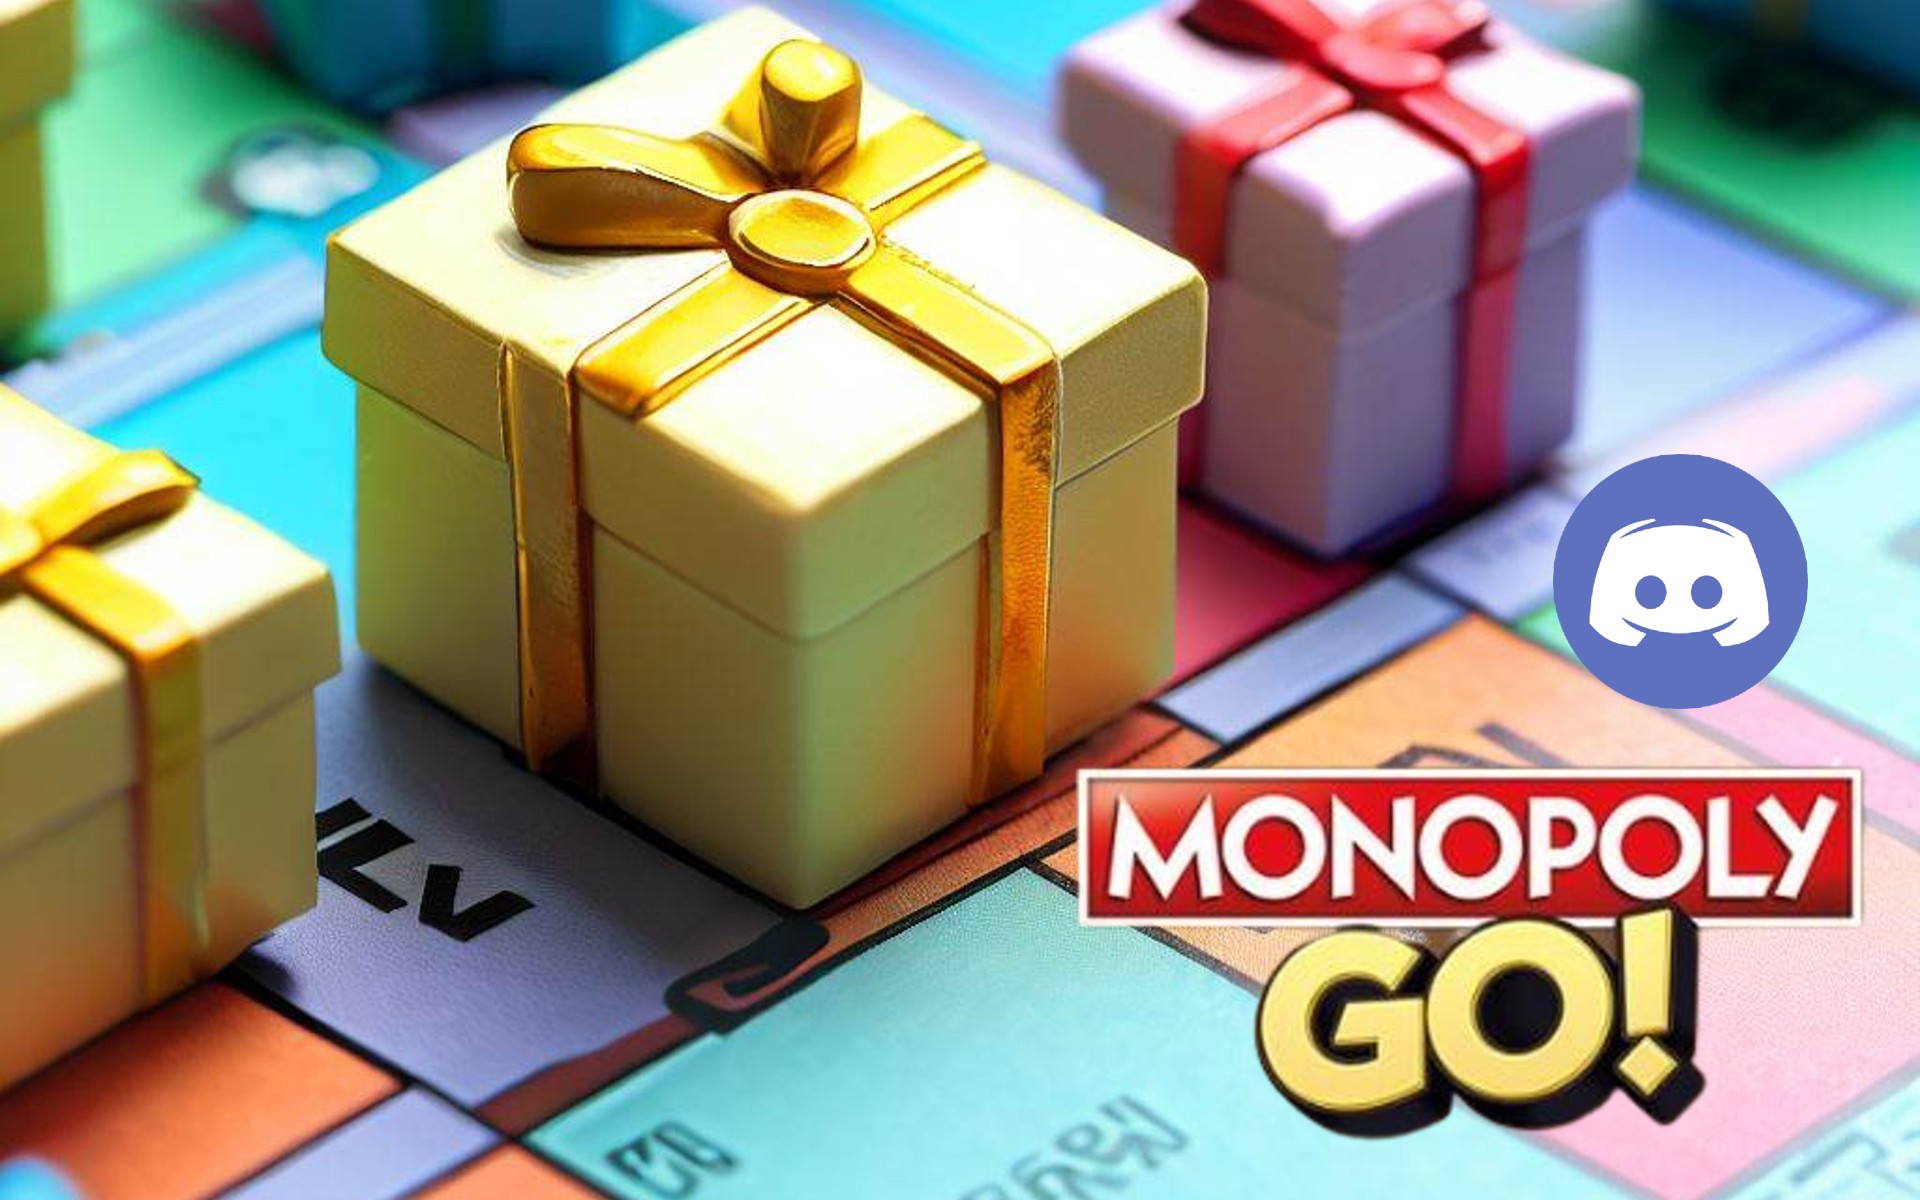 Los mejores servidores de Discord con regalos gratis para Monopoly Go